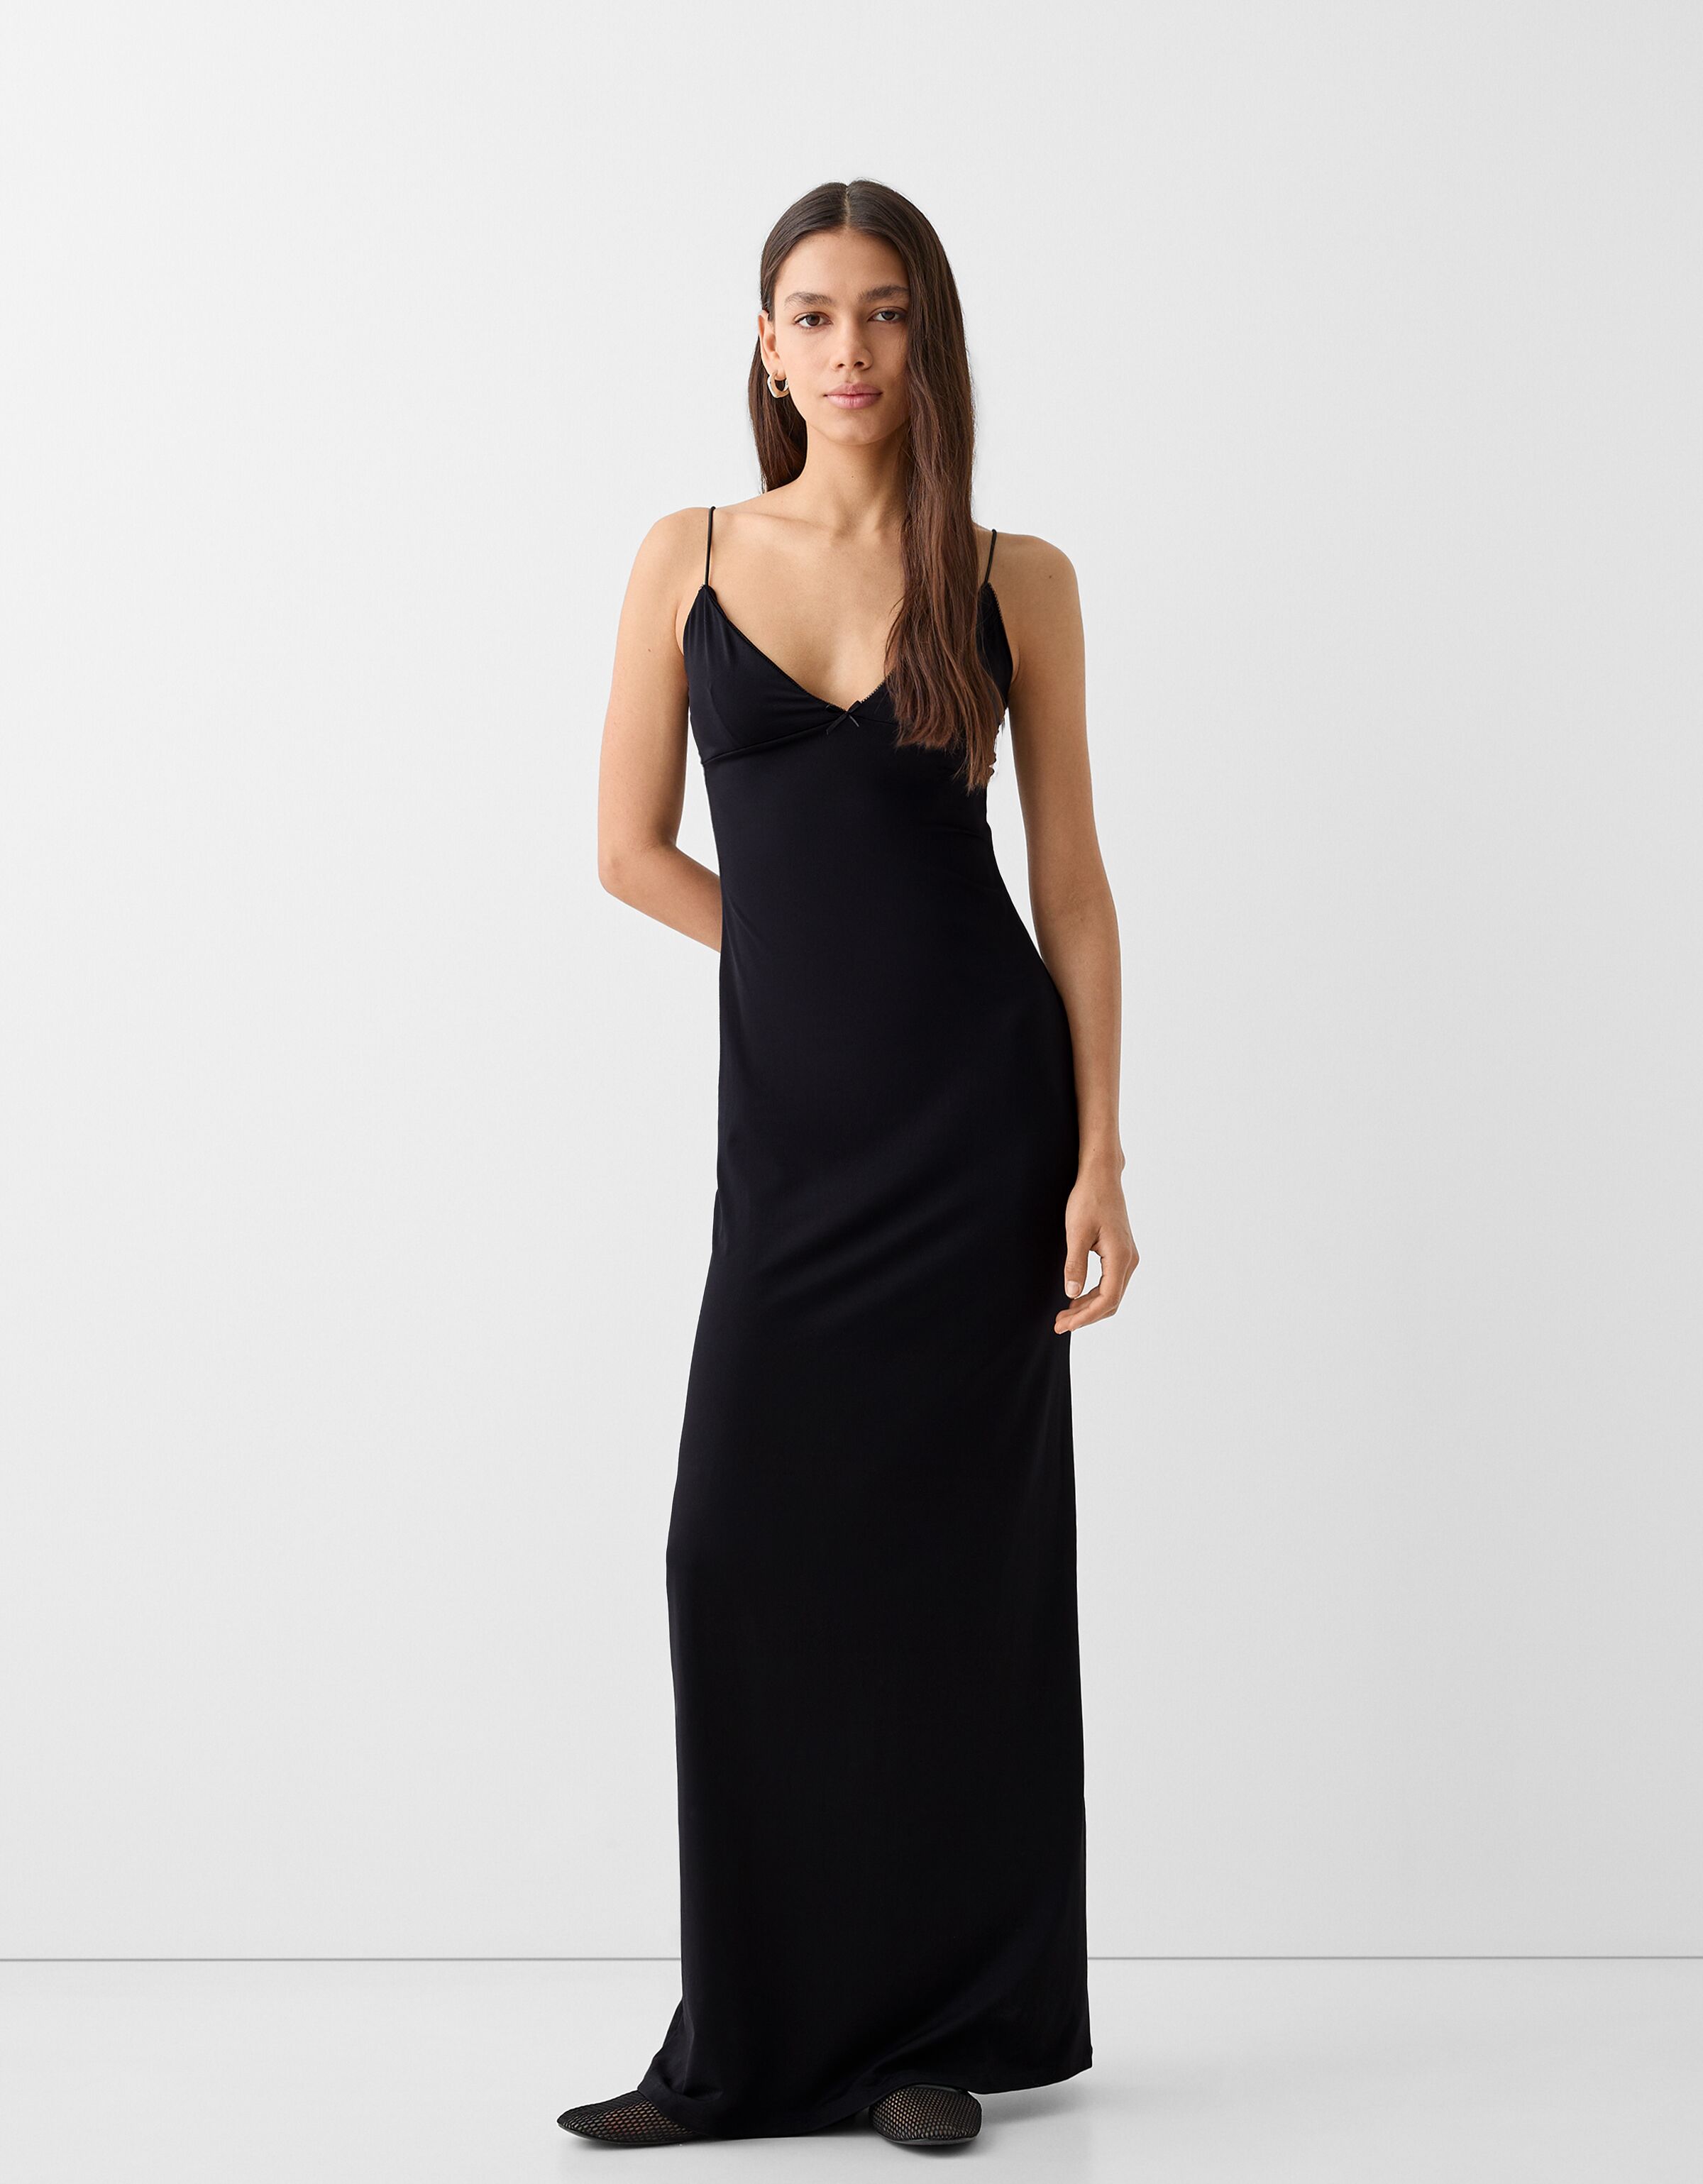 EMBROIDERED NET DRESS - 5417 - L / 3 Piece | Net dress design, Net dress,  Petite ball dresses